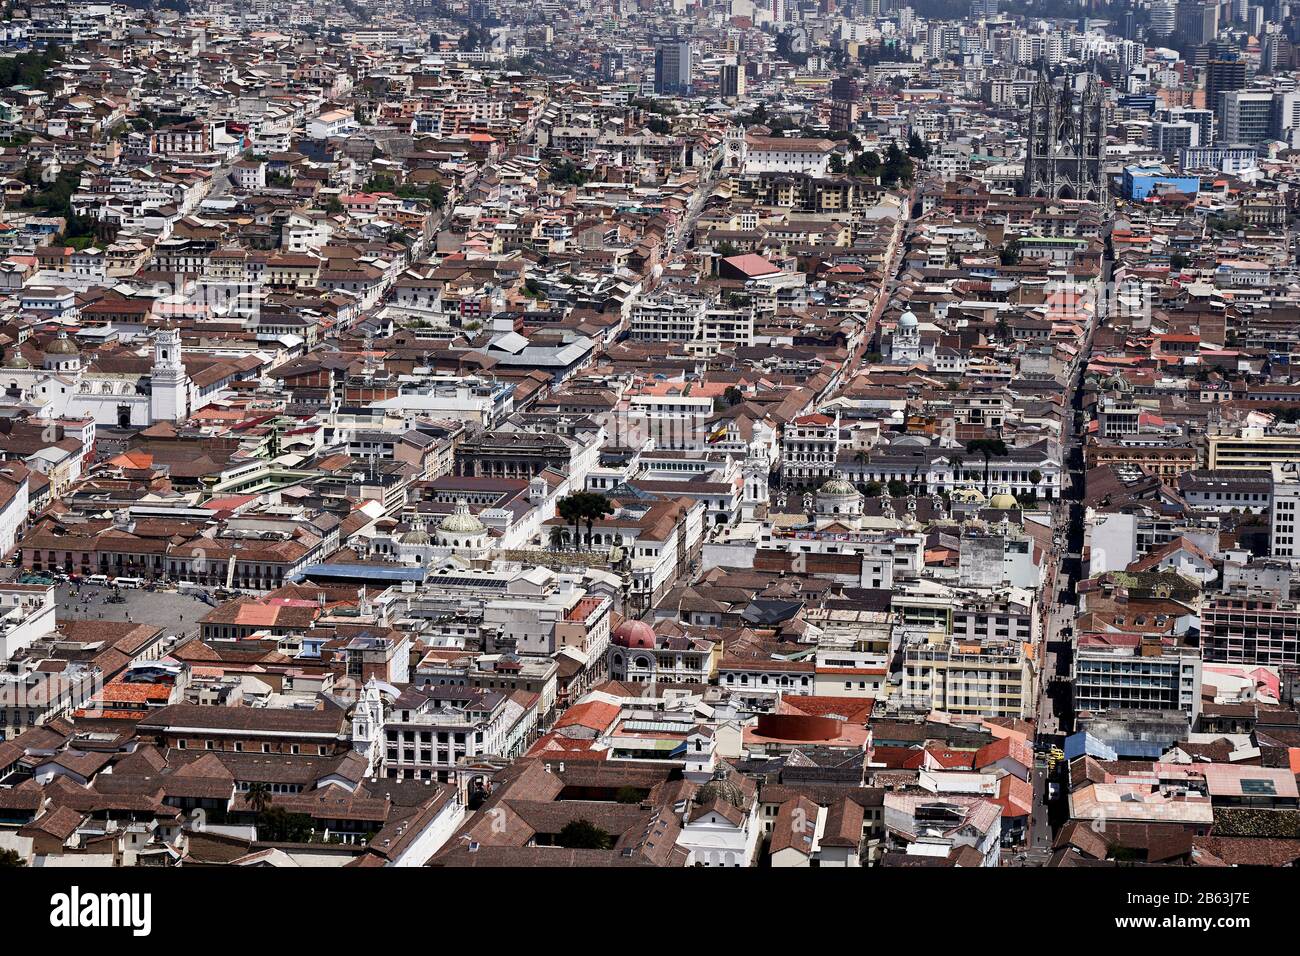 Cityscape of old town, Quito, Ecuador Stock Photo